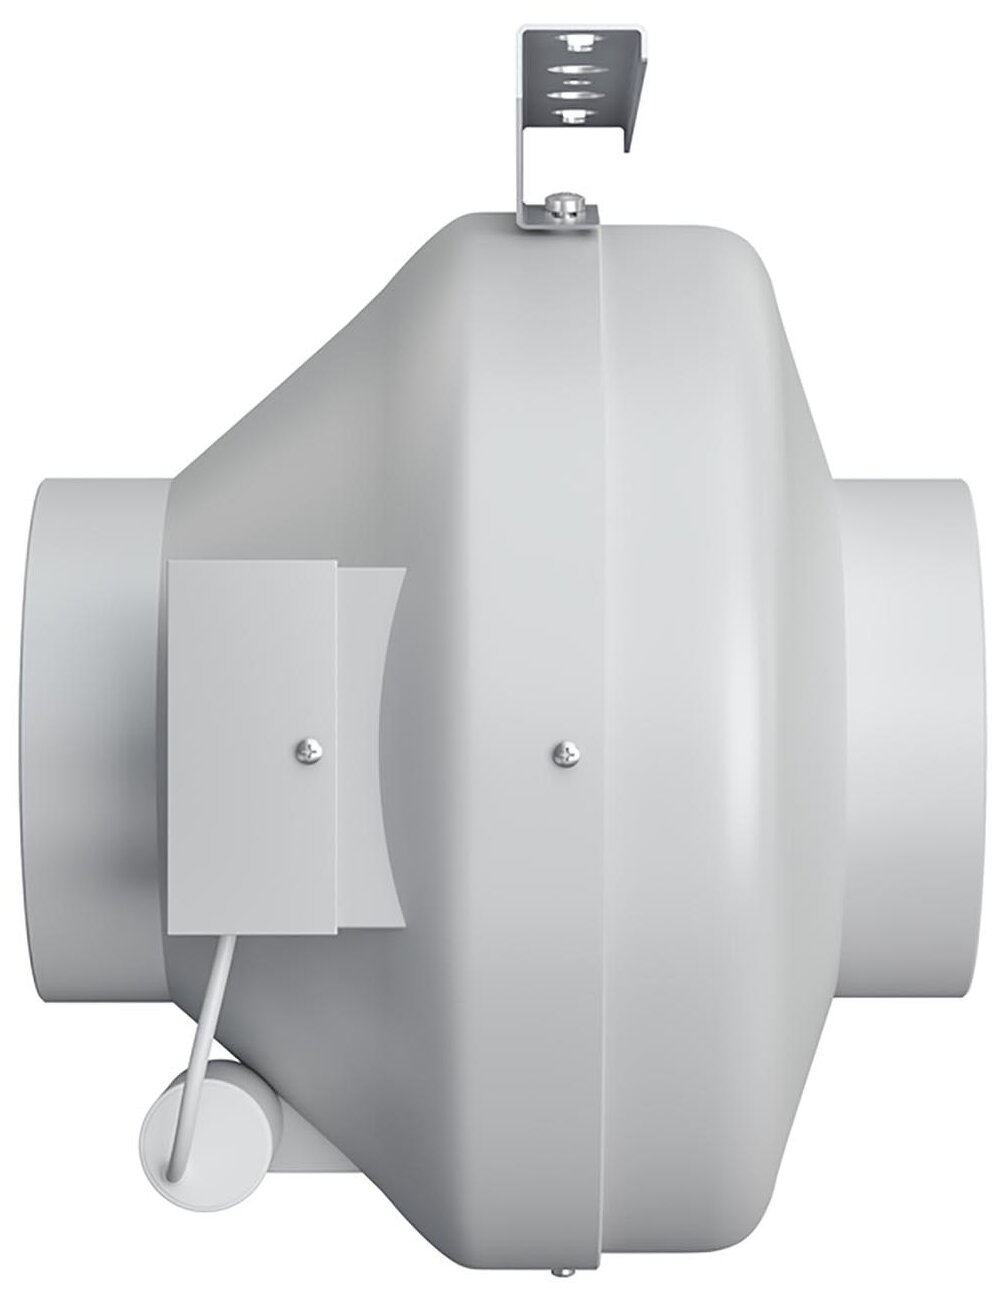 Вентилятор канальный центробежный Era Cyclone D160 мм 57 дБ 680 м3/ч цвет белый - фото №4